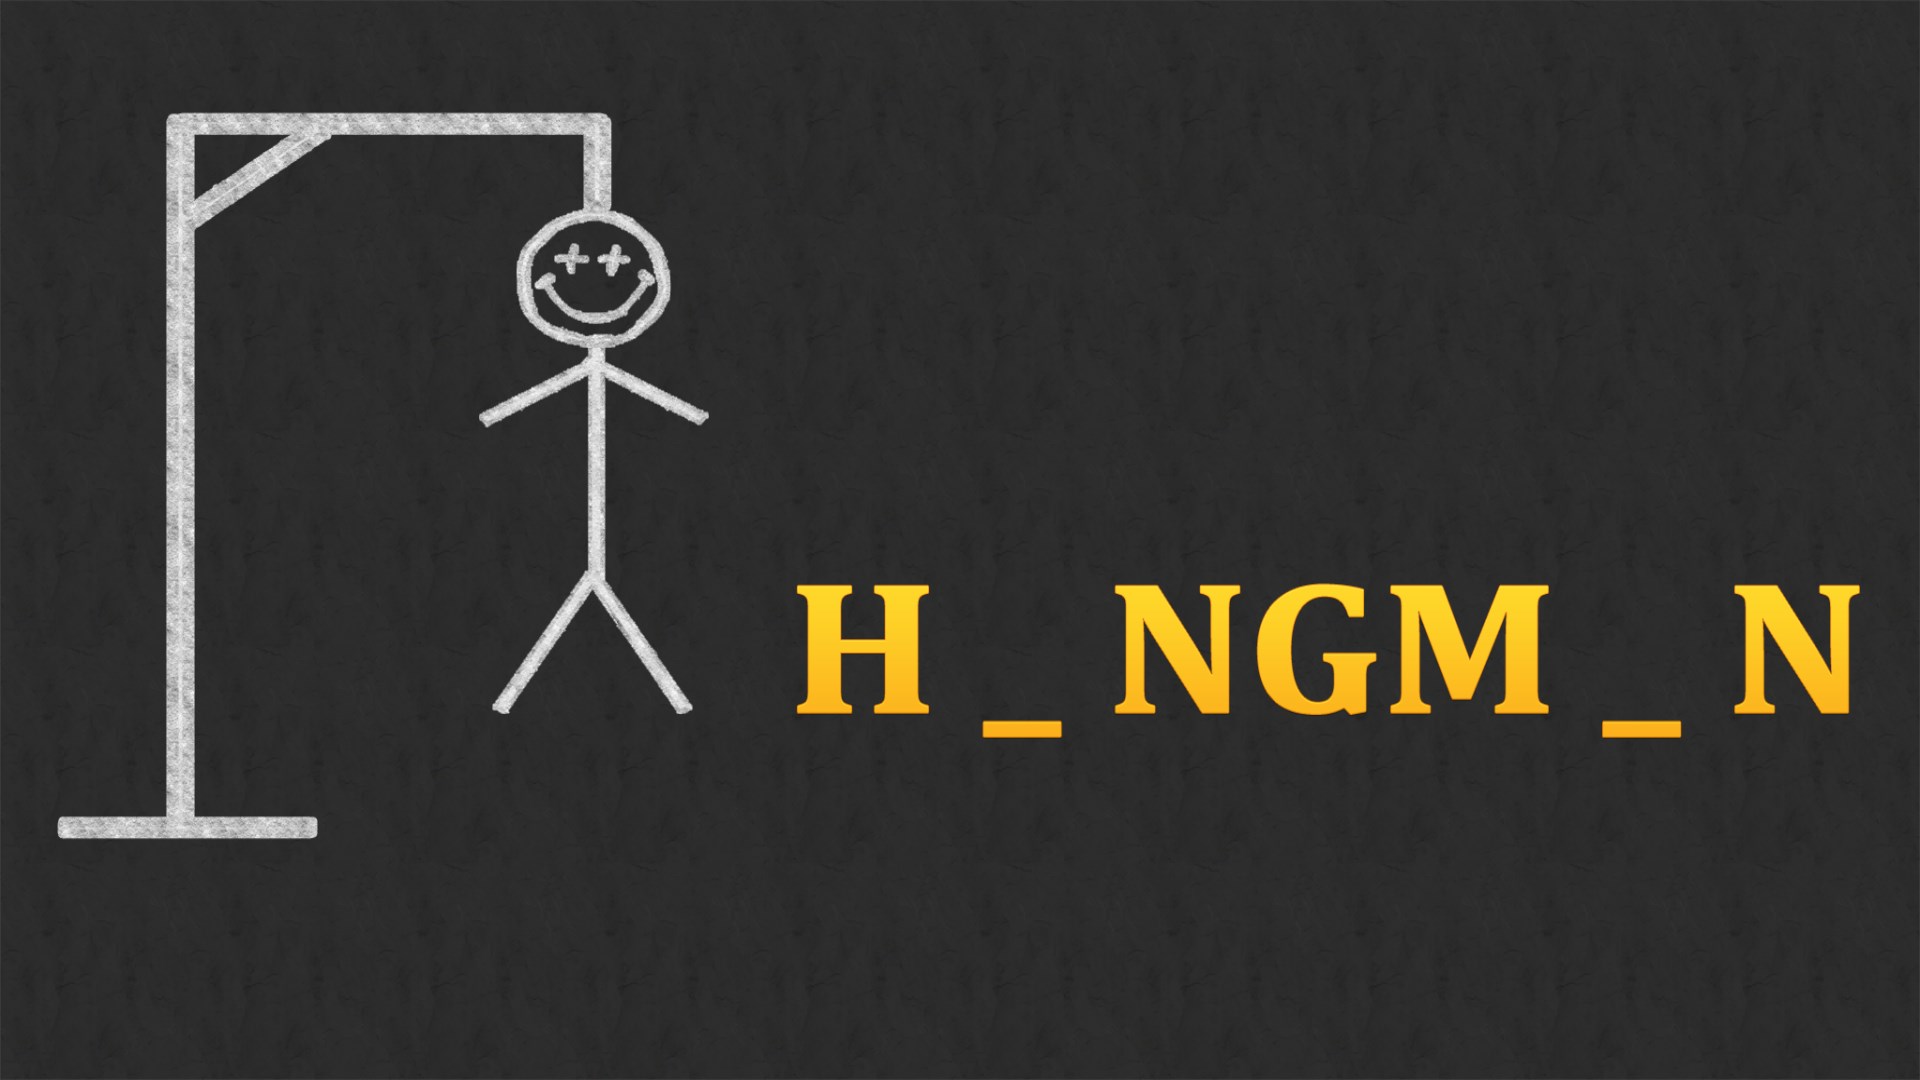 Buy Hangman Ultimate - PC & XBOX